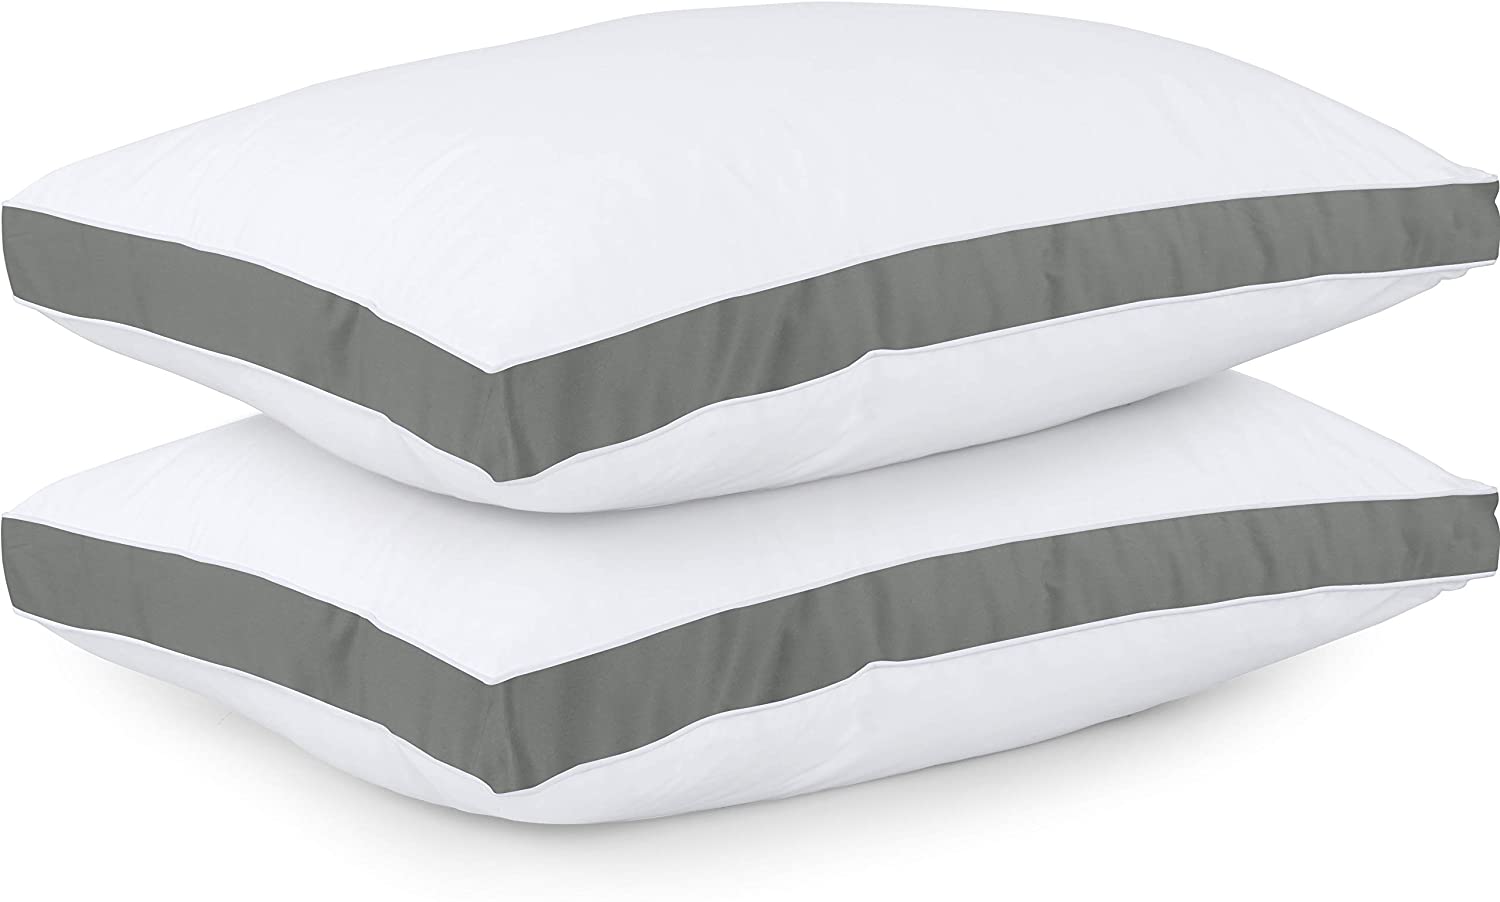  Utopia Bedding Throw Pillows (Set of 4, White), 18 x